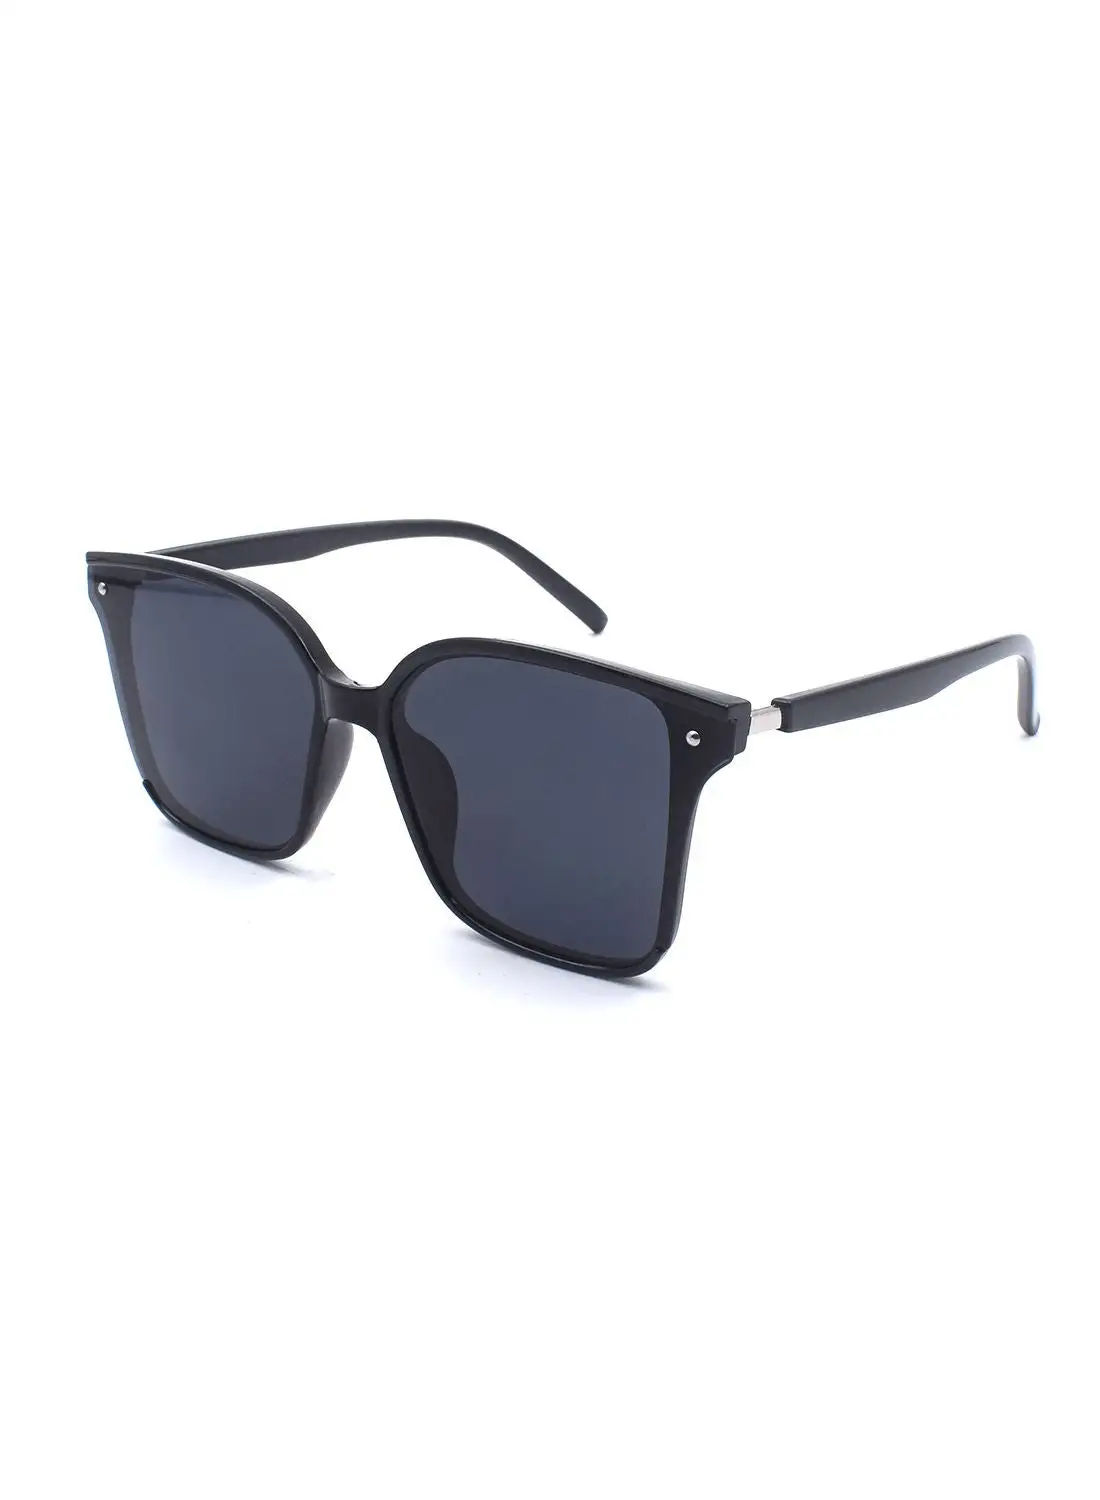 MADEYES Oversized Sunglasses EE20X067-1